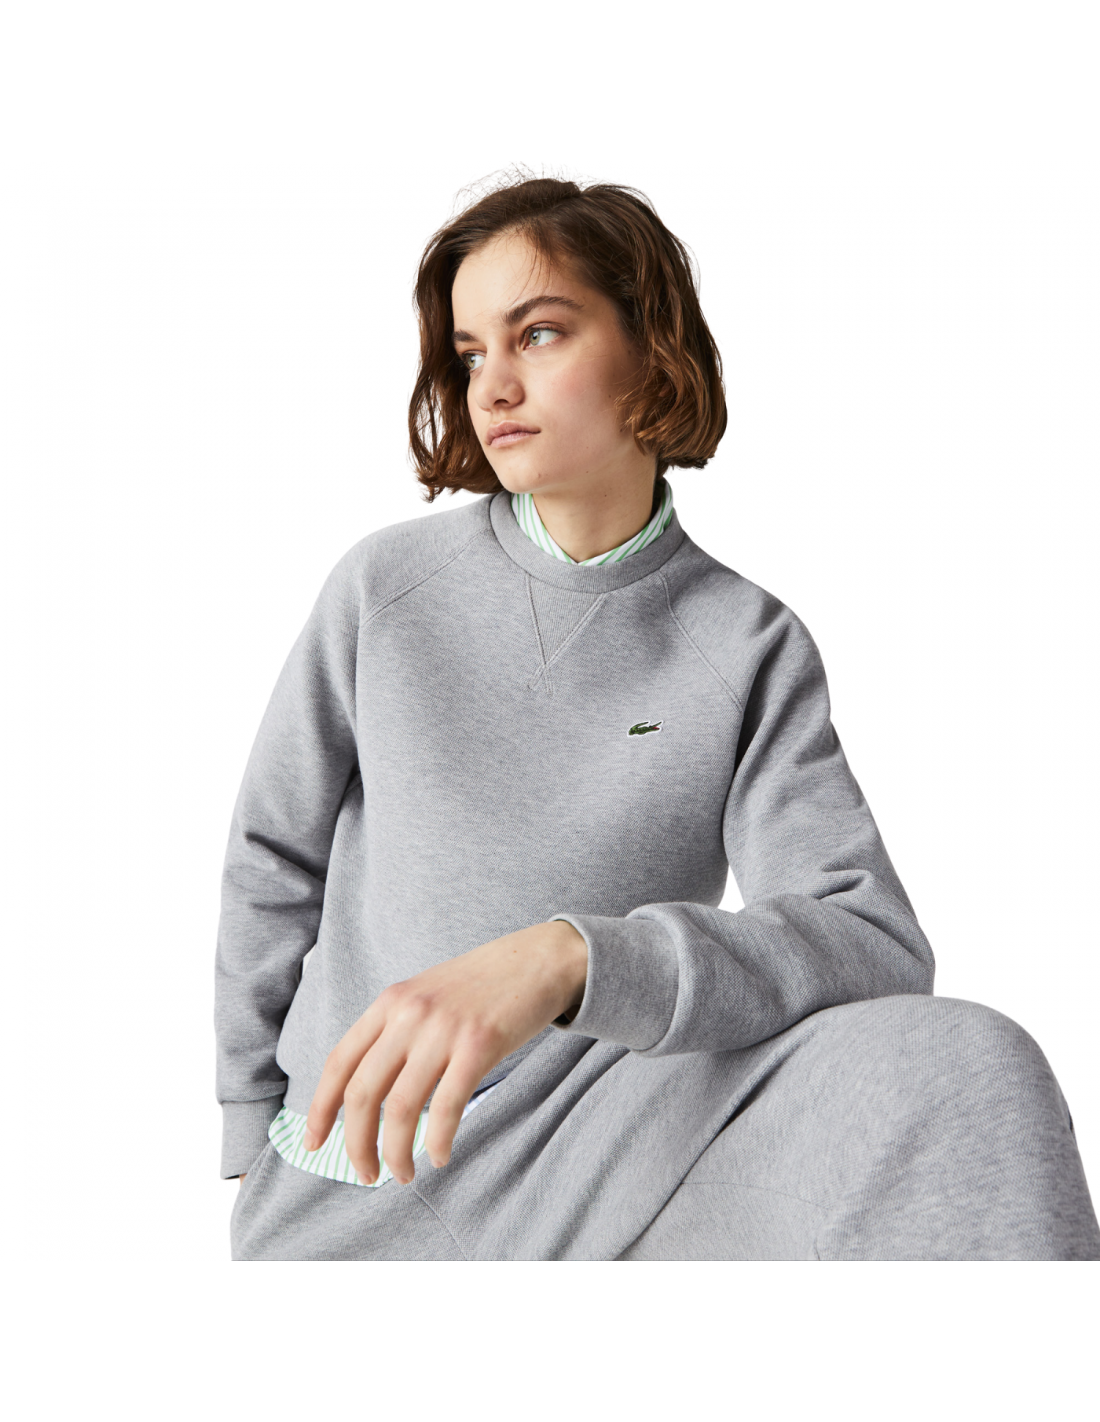 Studiet fe bundet Damen Lacoste Rundhals-Sweatshirt aus Baumwollmischung